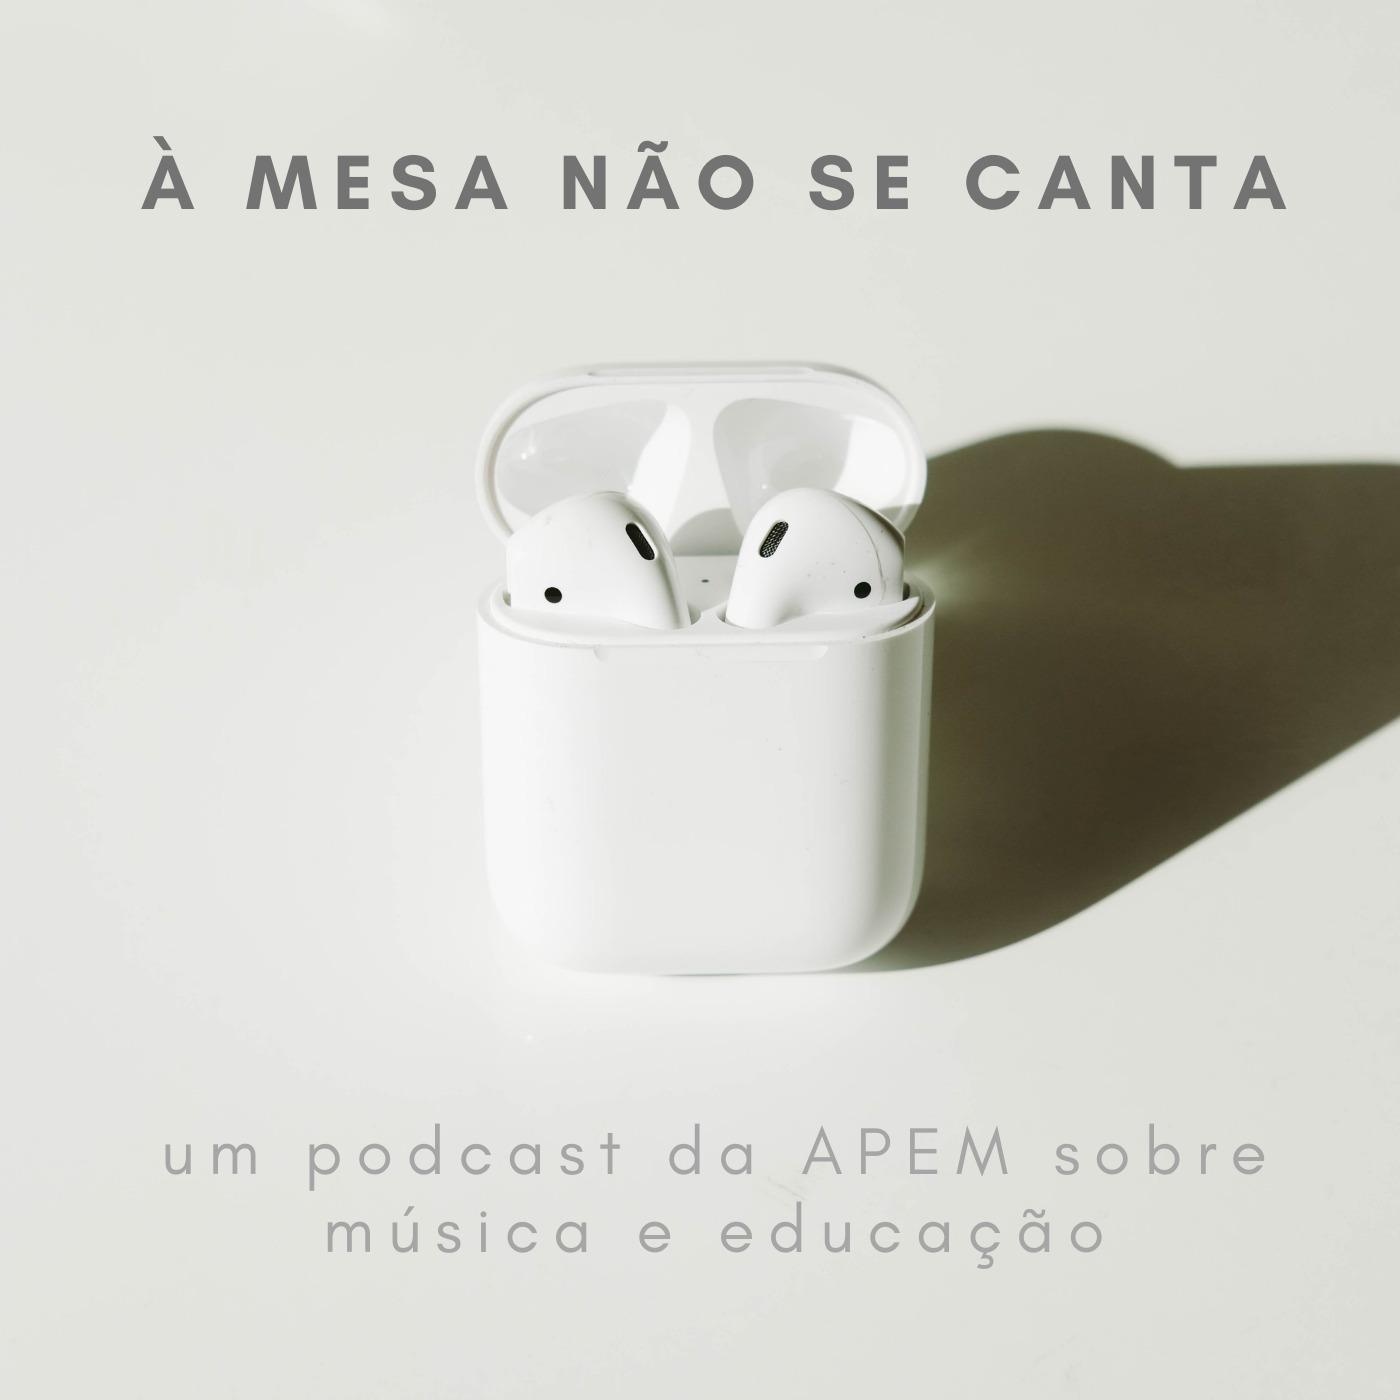 À MESA NÃO SE CANTA | um podcast da APEM sobre música e educação